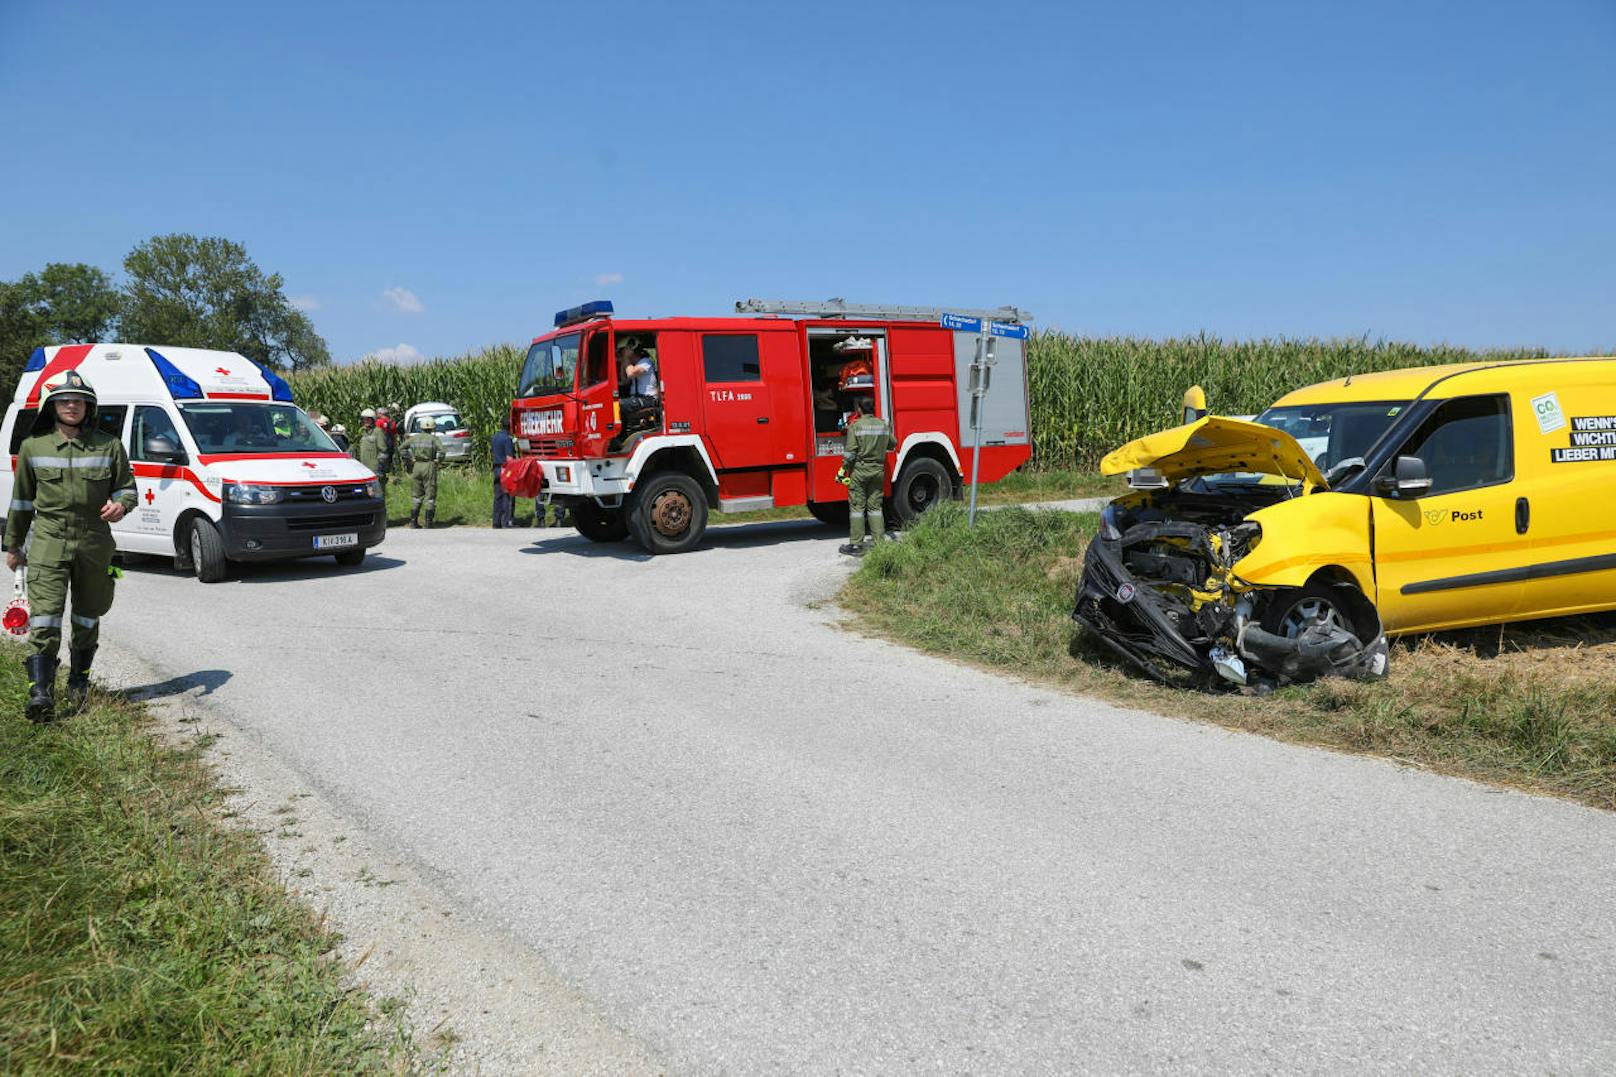 Crash zwischen einem Postauto und einem Pkw in Wartberg an der Krems (Bez. Kirchdorf/K). Der Pkw wurde in ein Maisfeld geschleudert, kam dort zum Stehen. Mehrere verletzte wurden von der Rettung ins Krankenhaus gebracht. Die Feuerwehr war für Aufräumarbeiten an der Unfallstelle.